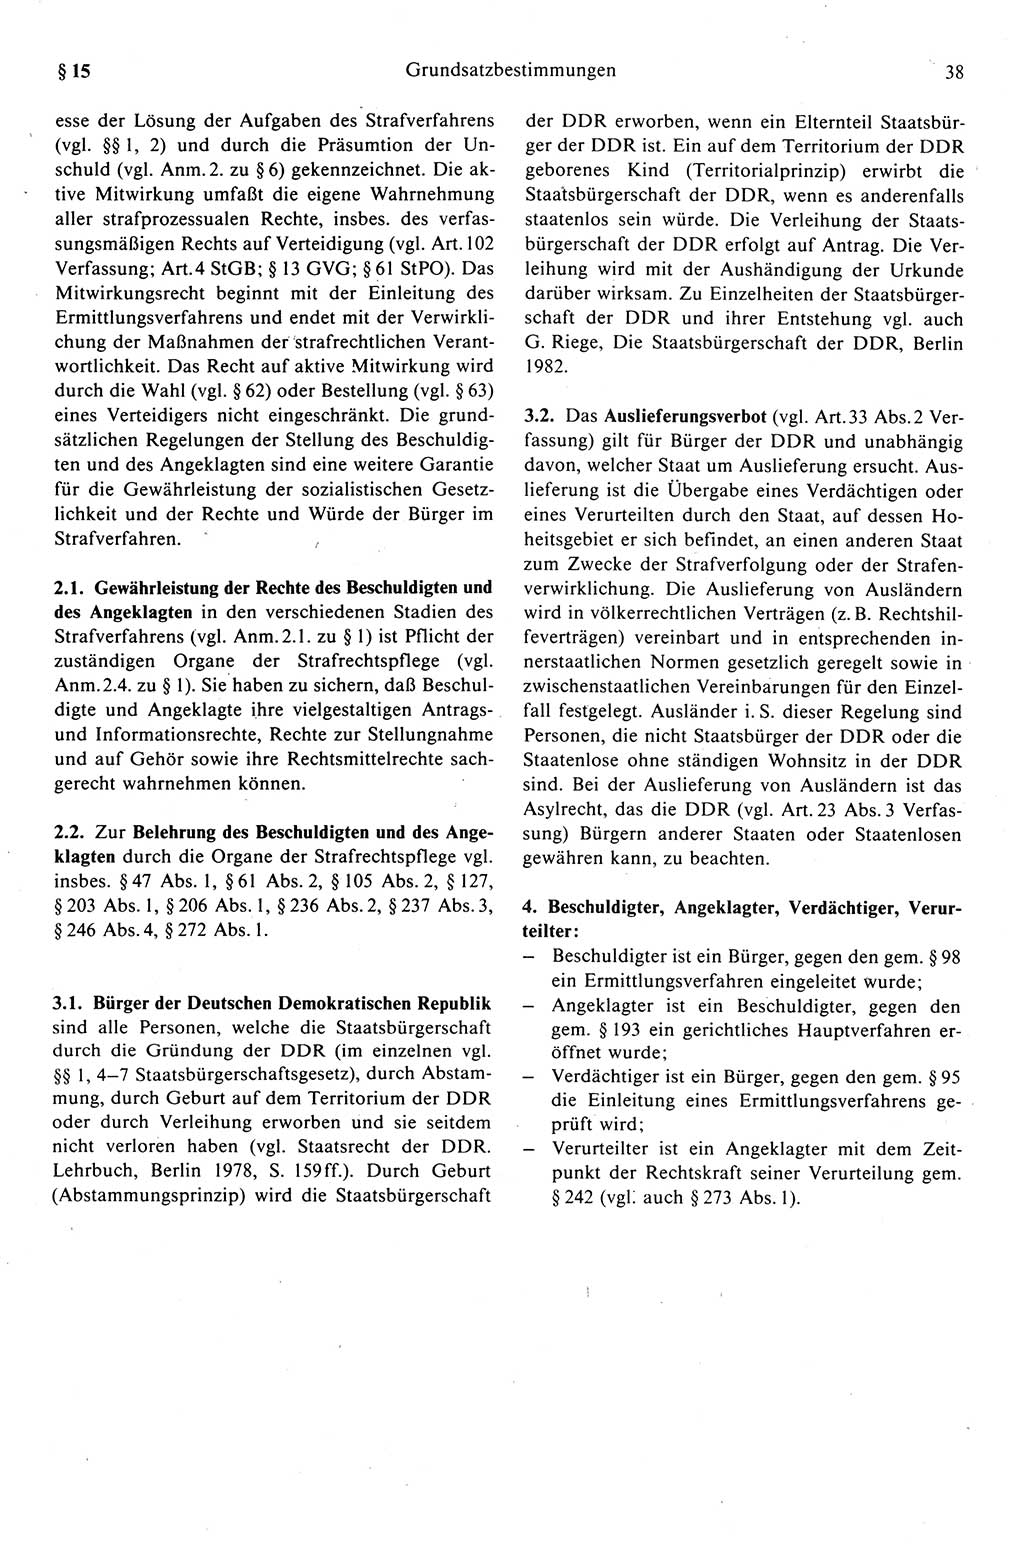 Strafprozeßrecht der DDR (Deutsche Demokratische Republik), Kommentar zur Strafprozeßordnung (StPO) 1989, Seite 38 (Strafprozeßr. DDR Komm. StPO 1989, S. 38)